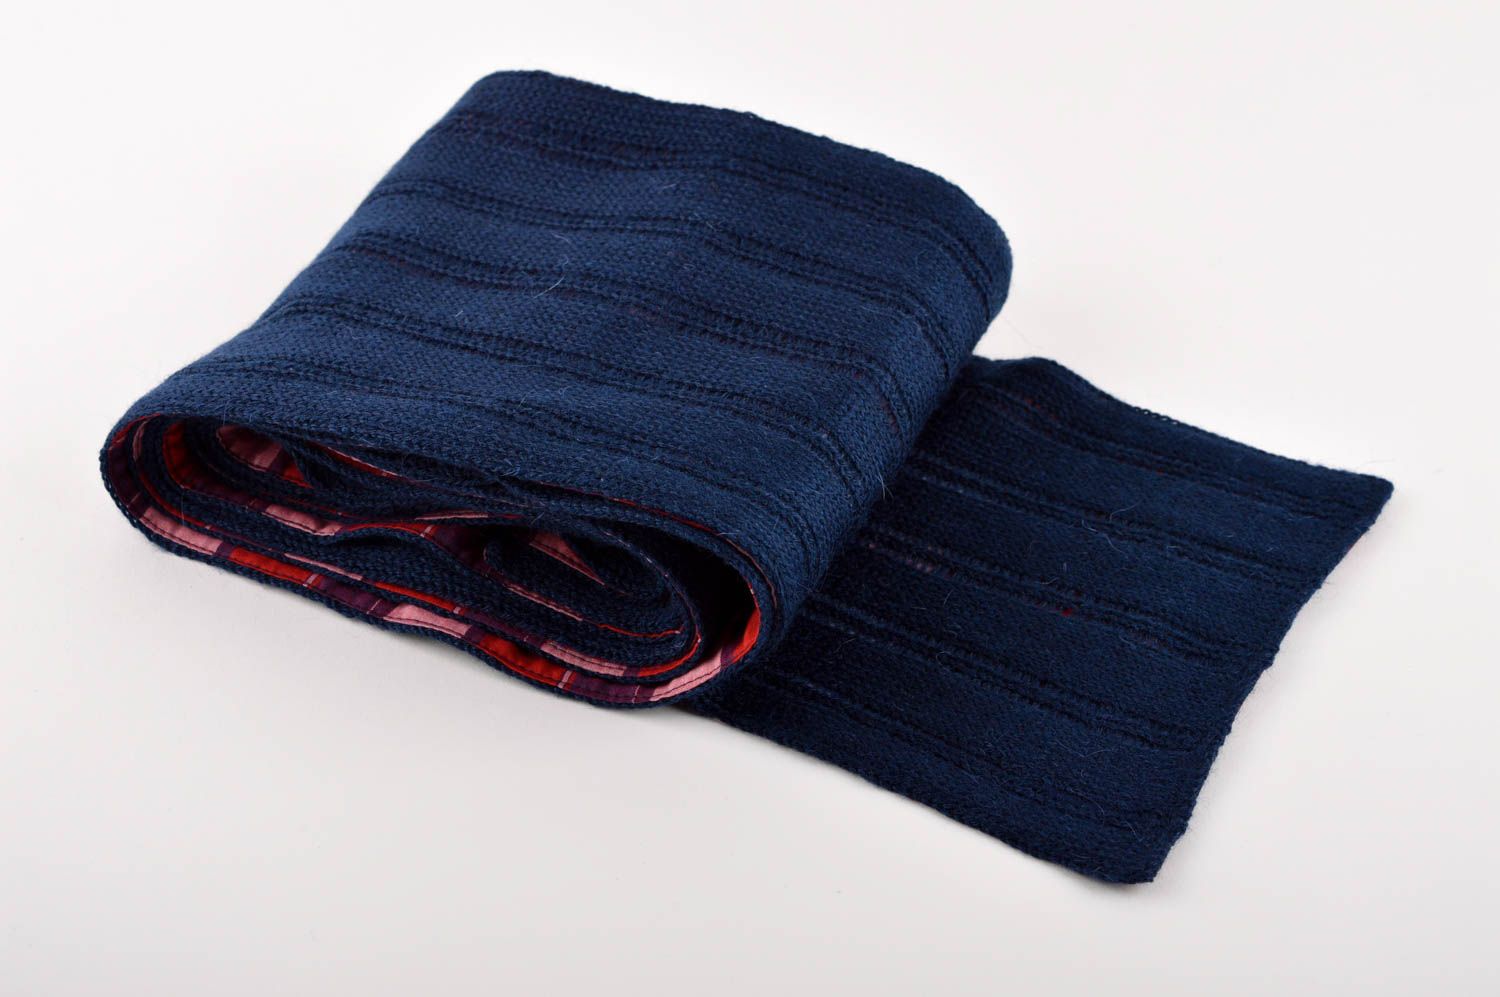 Шарф ручной работы шарф на шею синий двухсторонний мужской шарф в клеточку фото 1